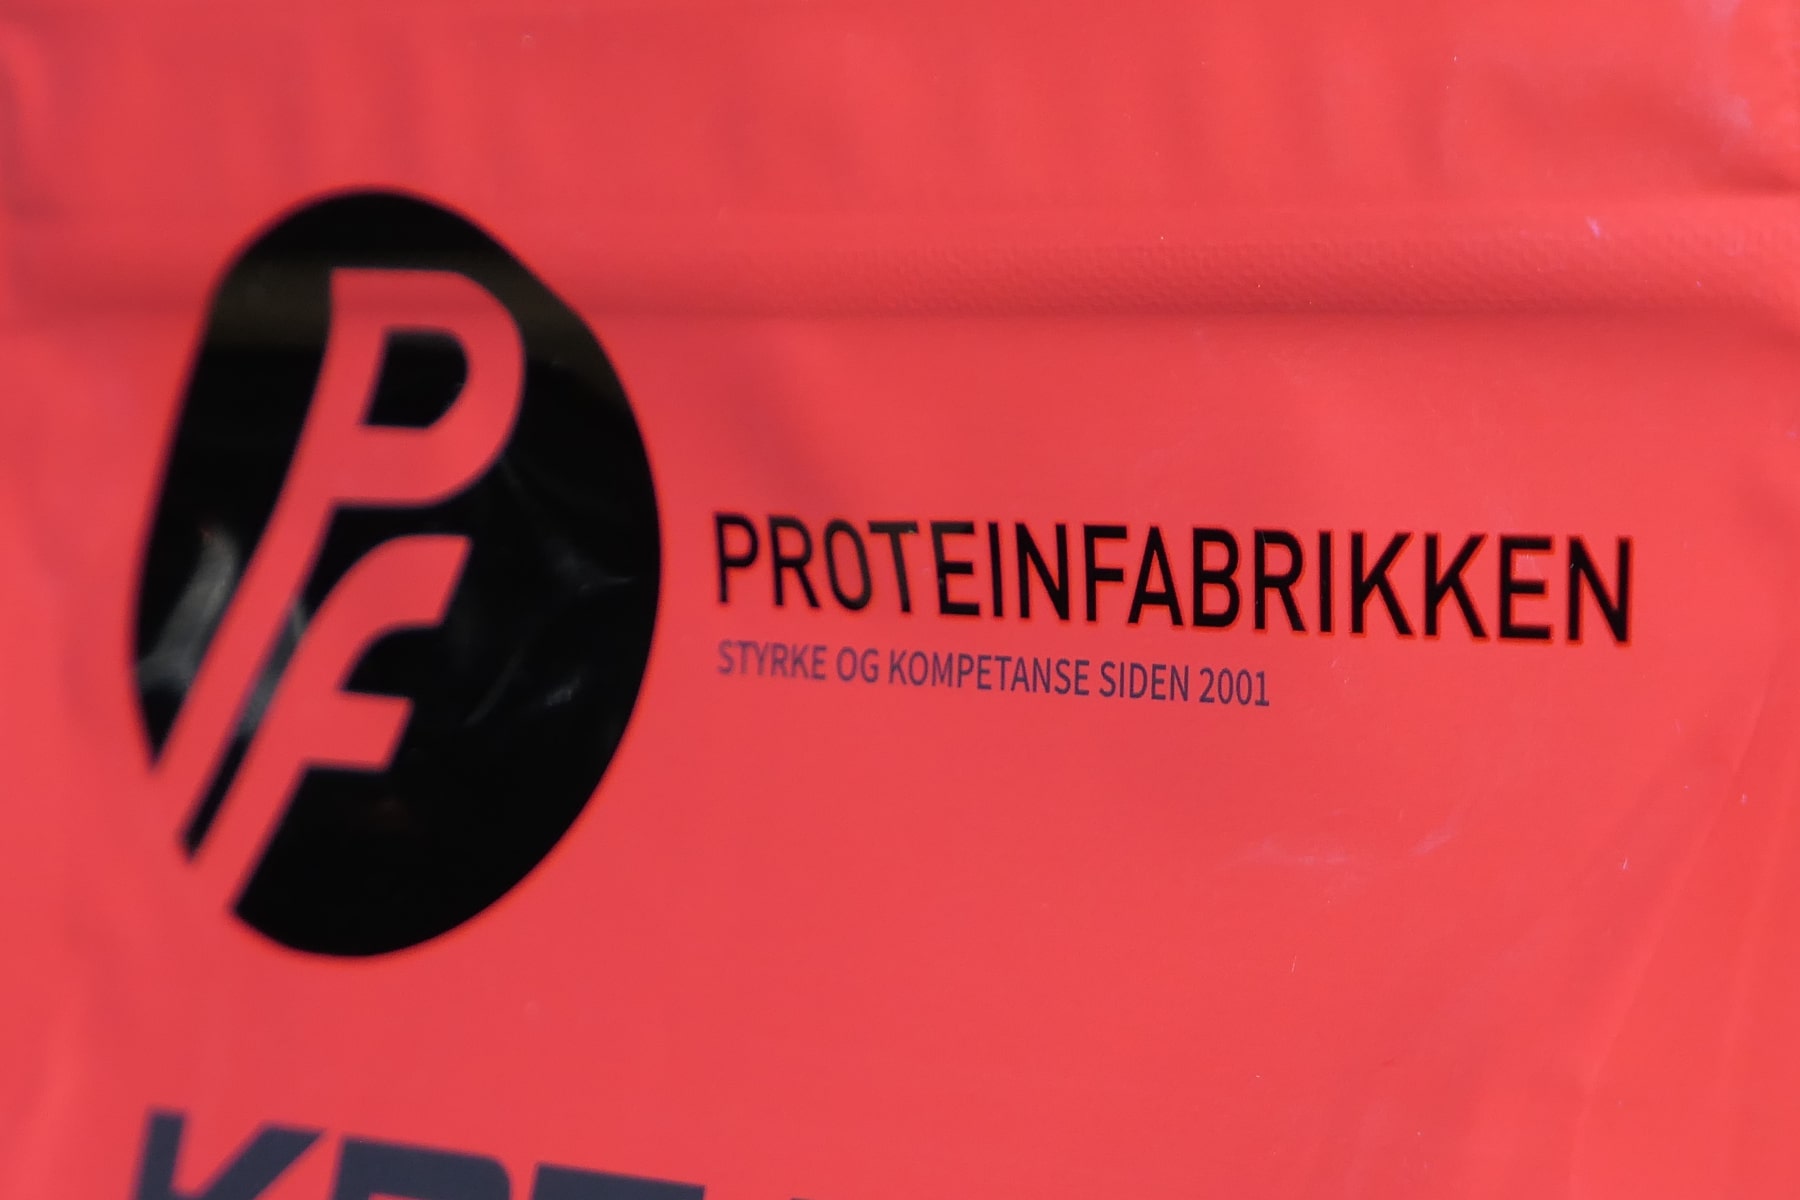 Kreatin monohydrat proteinfabrikken logo